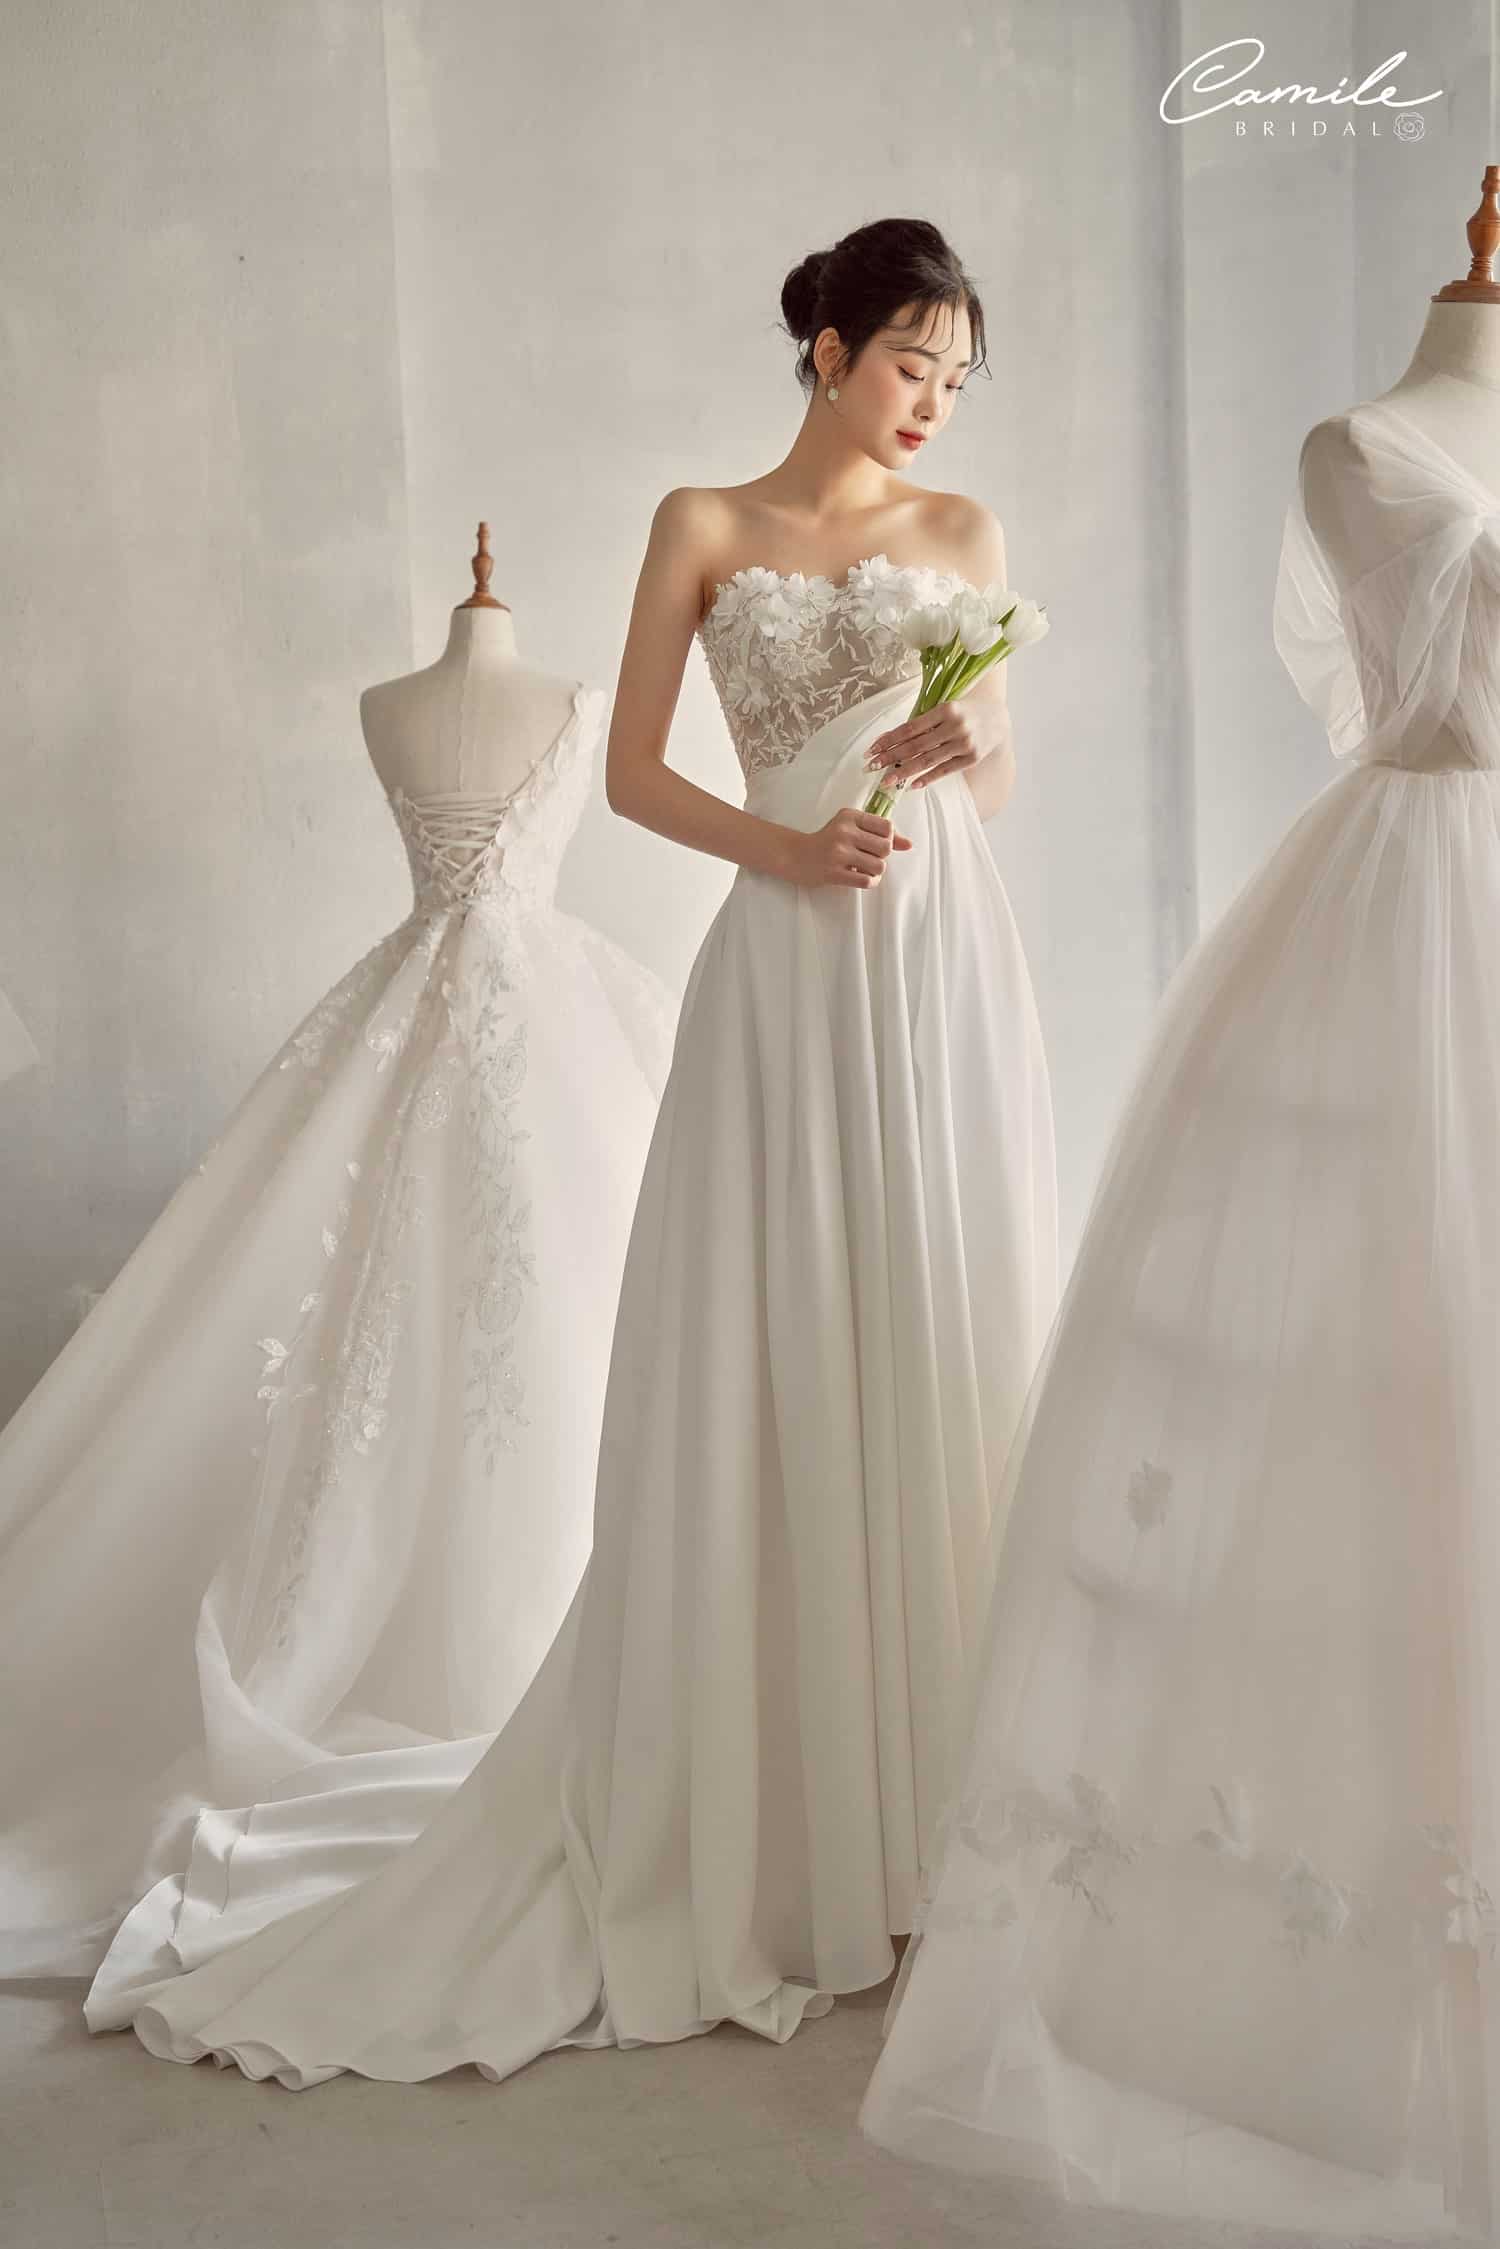 Bộ sưu tập váy cưới đẹp sang trọng tại Omni Bridal - Omni Bridal- Đơn vị  cung cấp dịch vụ cưới trọn gói chuyên nghiệp và uy tín.